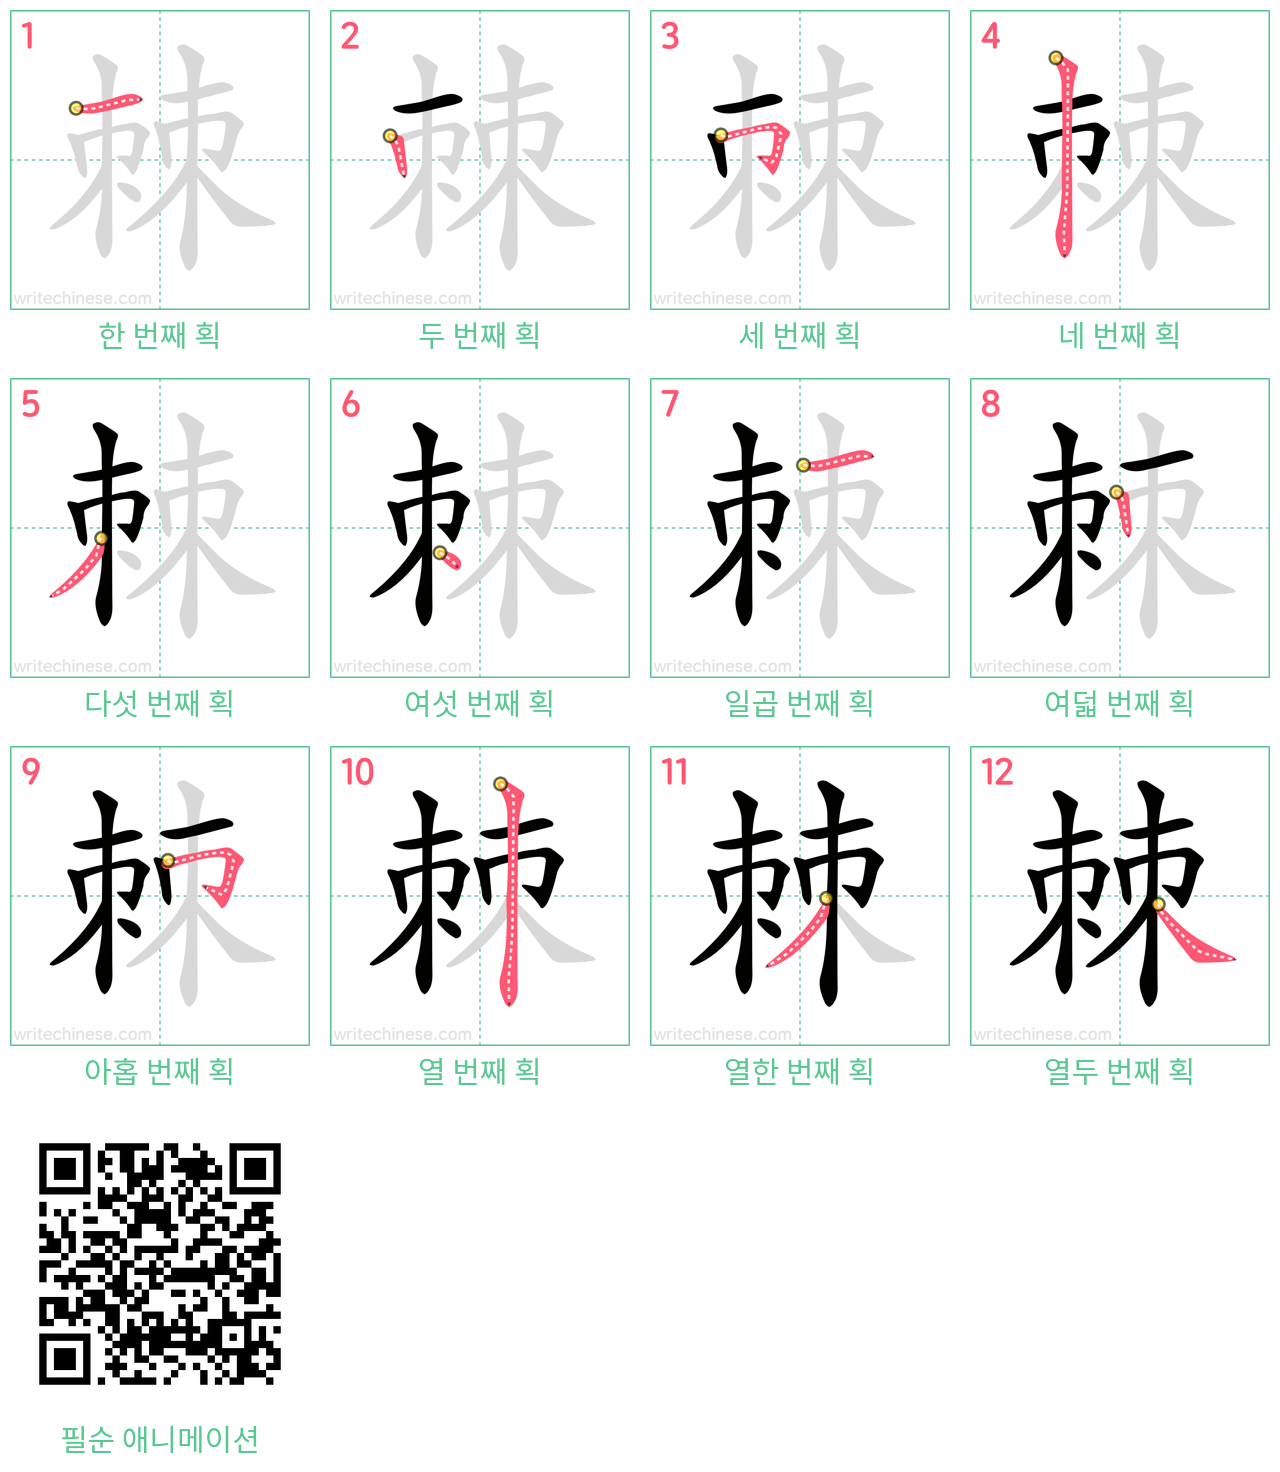 棘 step-by-step stroke order diagrams